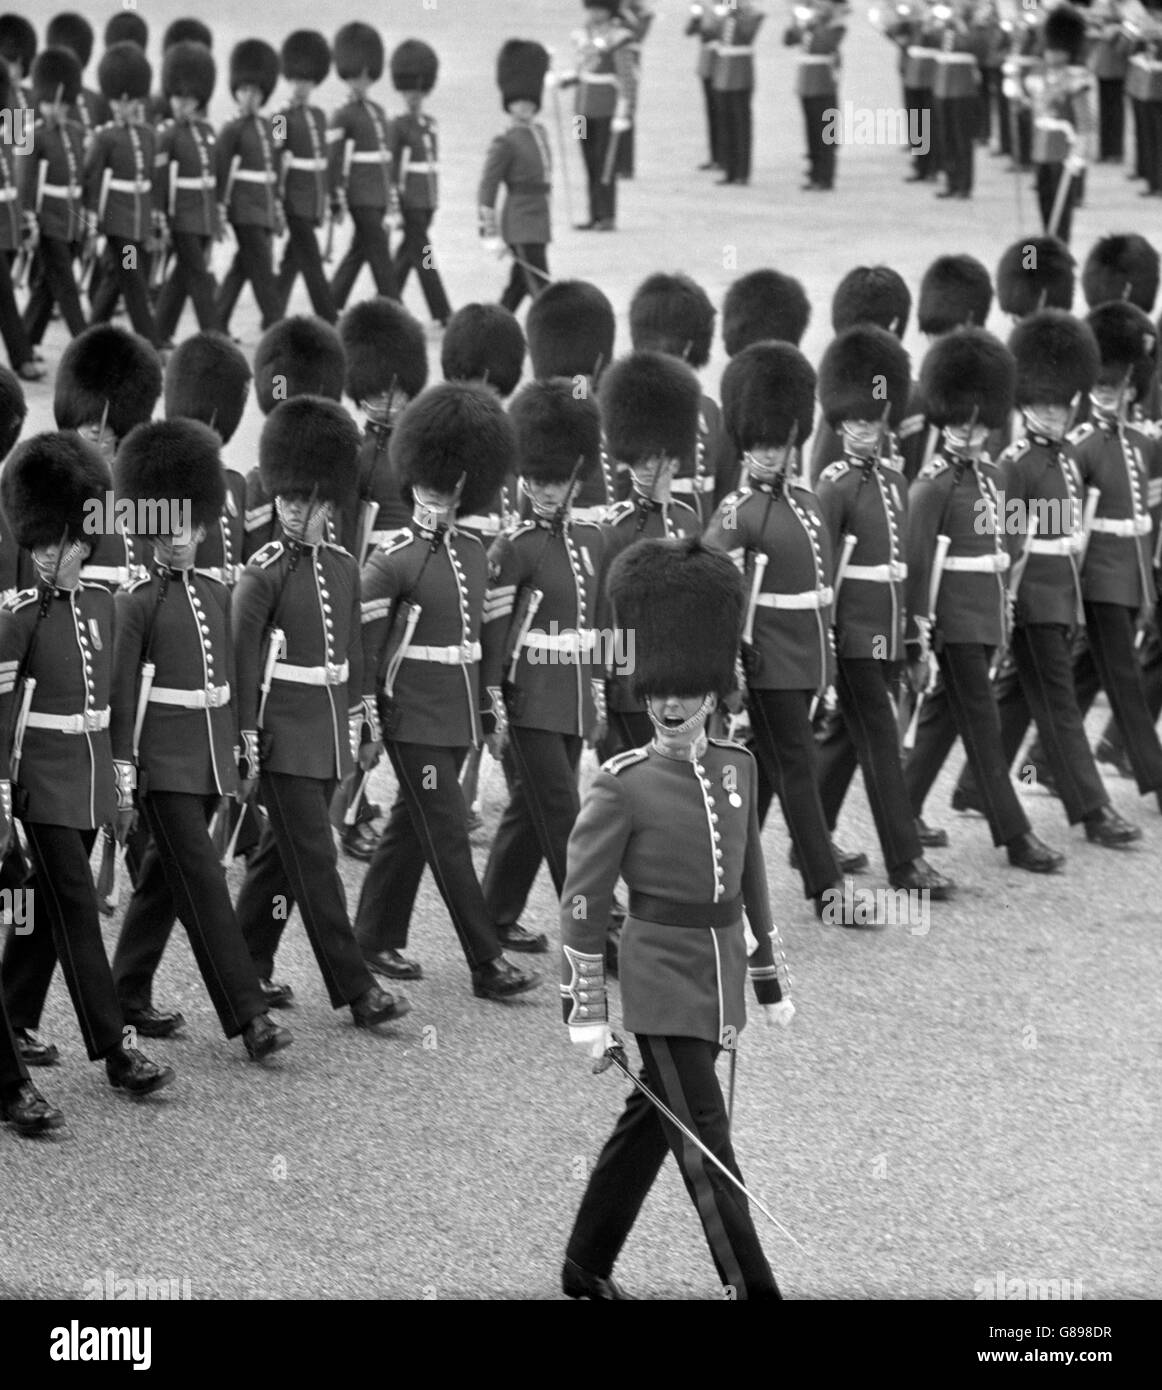 Avec la précision de l'horloge, les têtes cliquent sur la droite tandis qu'un officier passe la commande lorsque les gardes passent la base de saling lors d'une répétition de la couleur sur Horse Guards Parade Londres. La cérémonie, en l'honneur de l'anniversaire de la Reine, a lieu le 11 juin. Banque D'Images